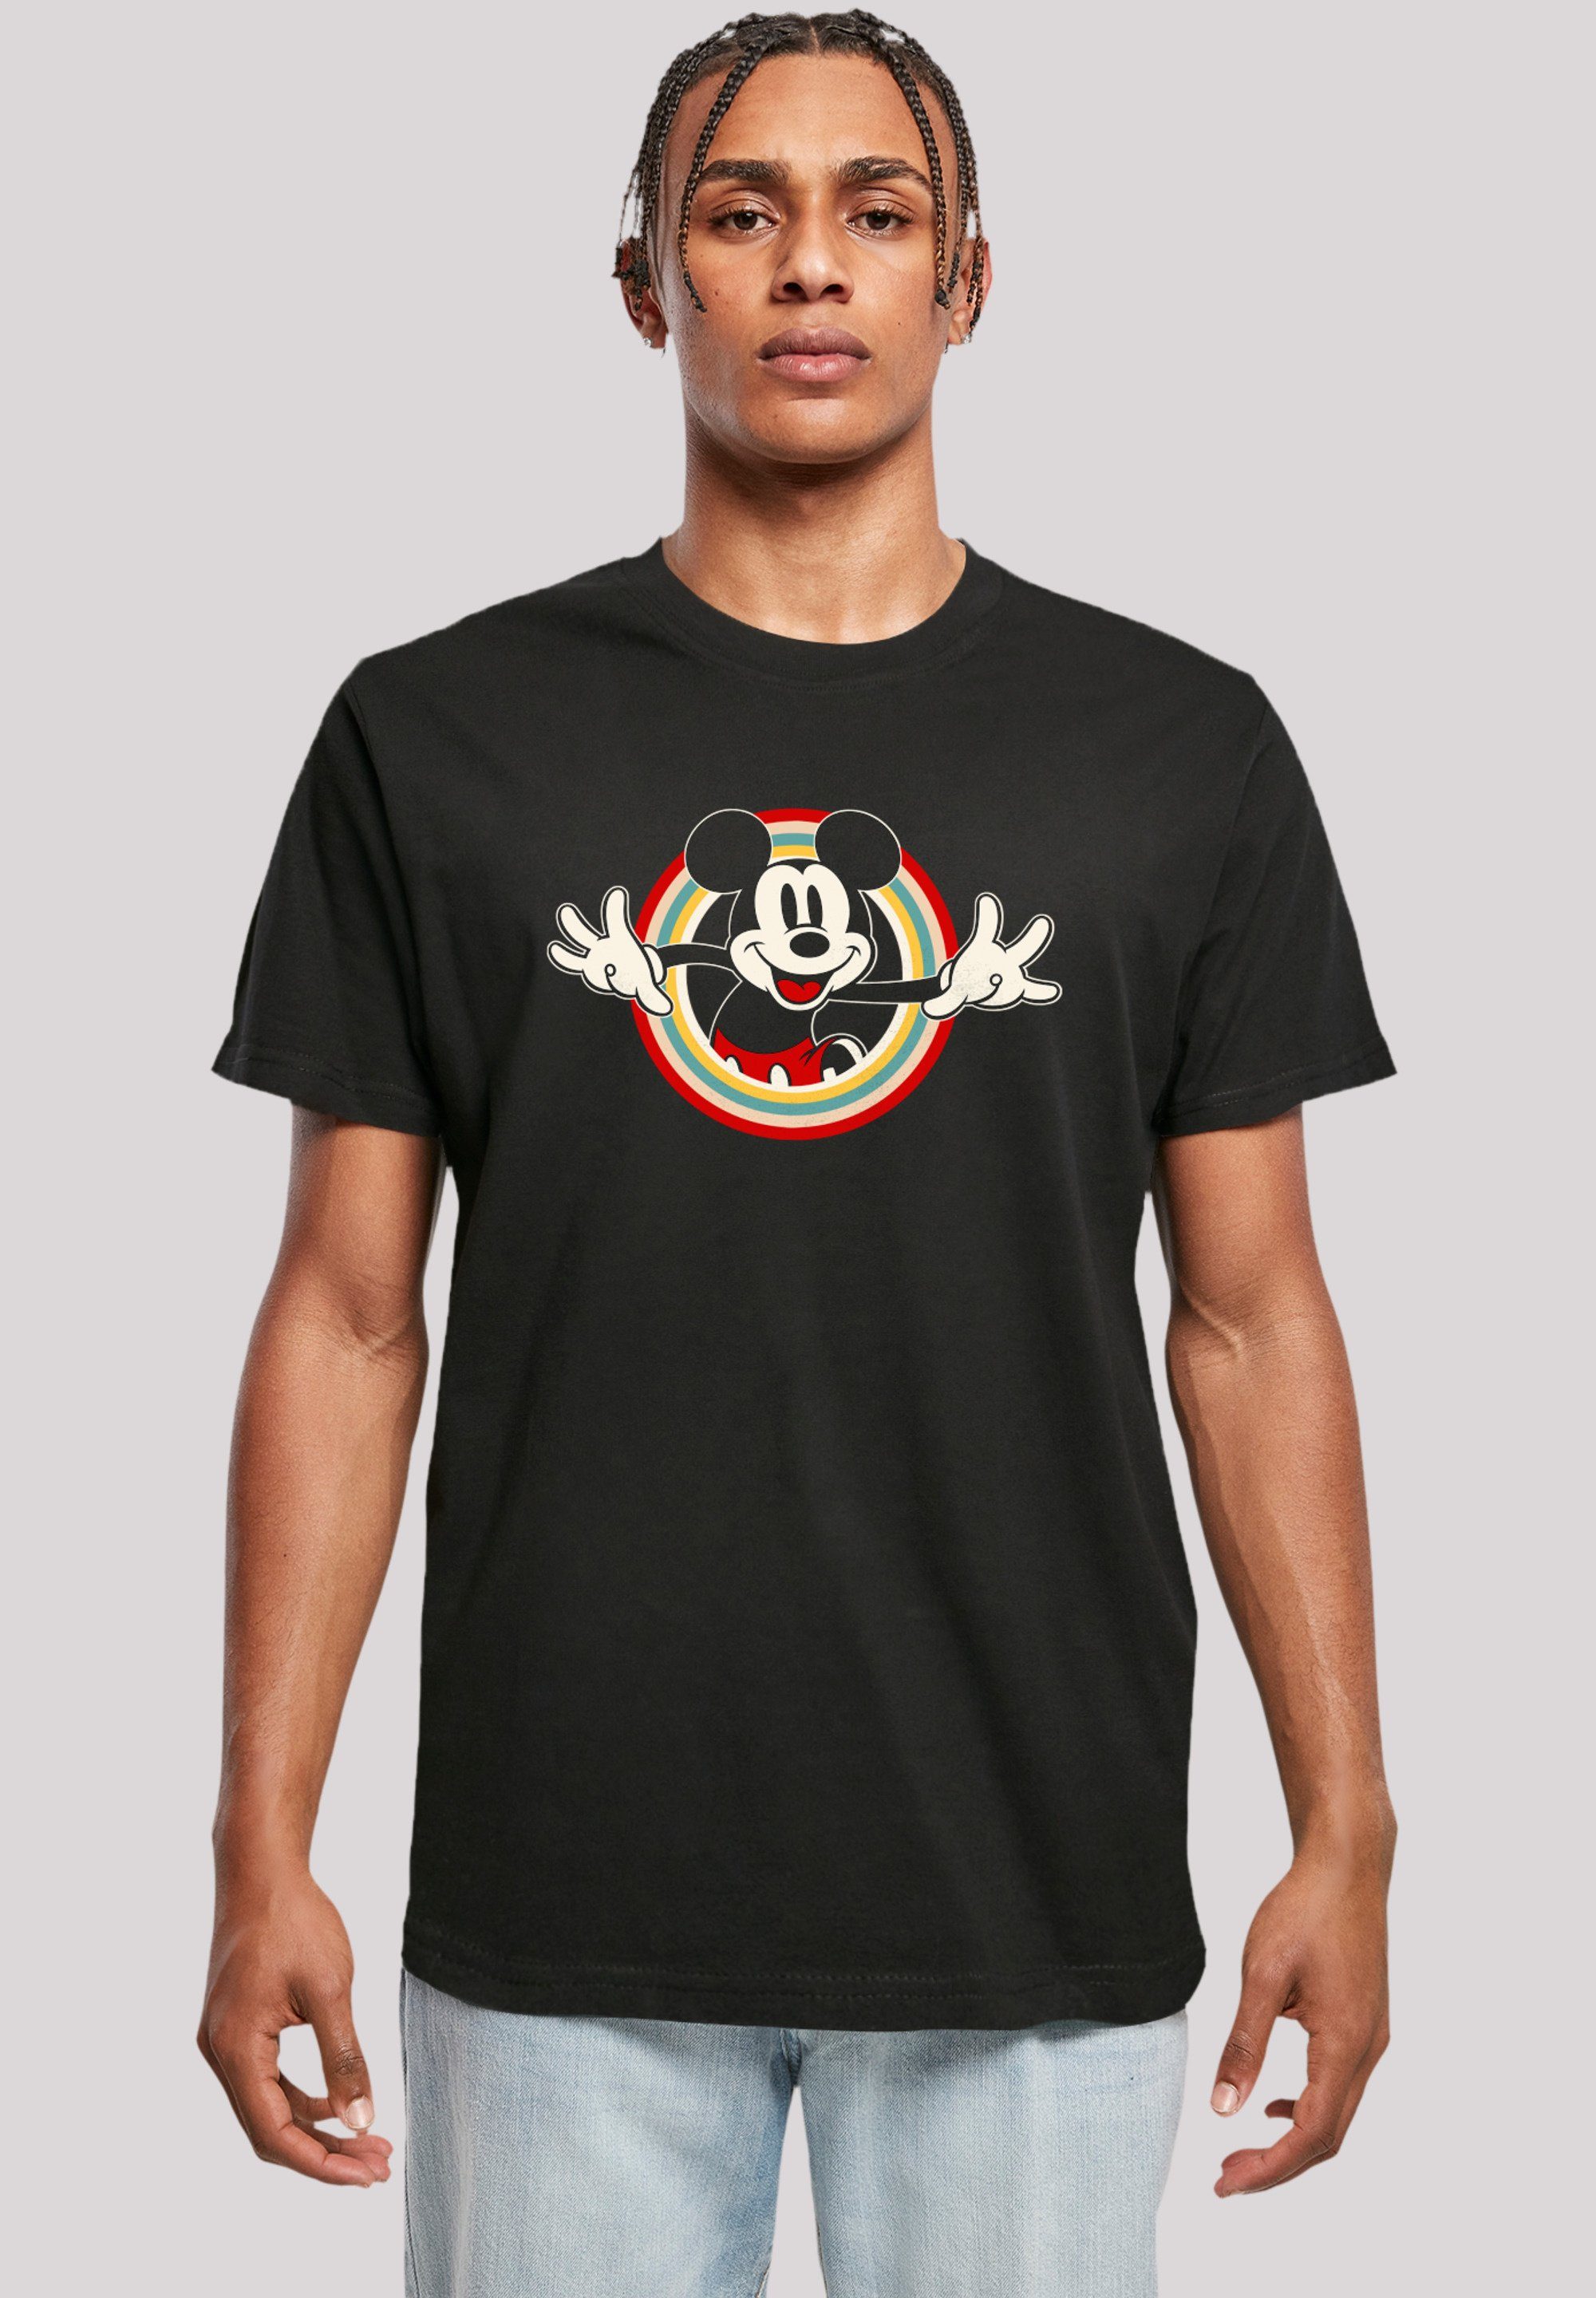 Hello F4NT4STIC Mouse Tragekomfort mit hohem Mickey weicher T-Shirt Sehr Disney Qualität, Baumwollstoff Premium